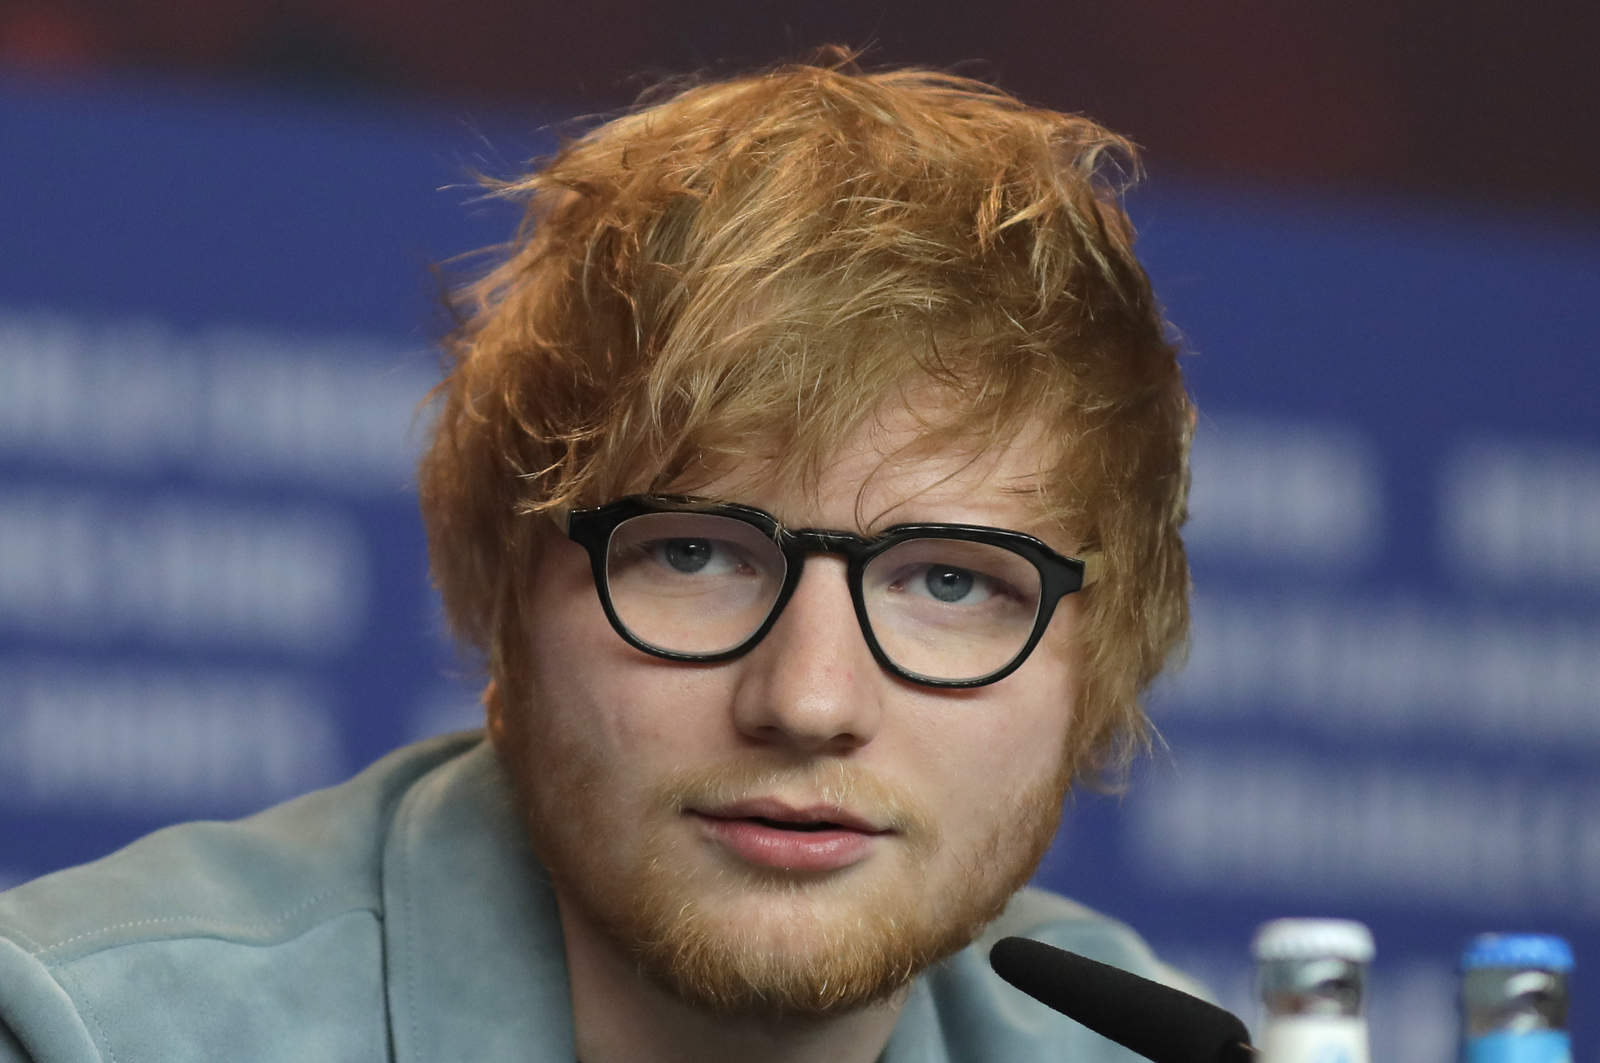 Anuncio. El cantante Ed Sheeran se tomará un descanso luego de realizar su gira Divide, la cual terminará el próximo año. (ARCHIVO)